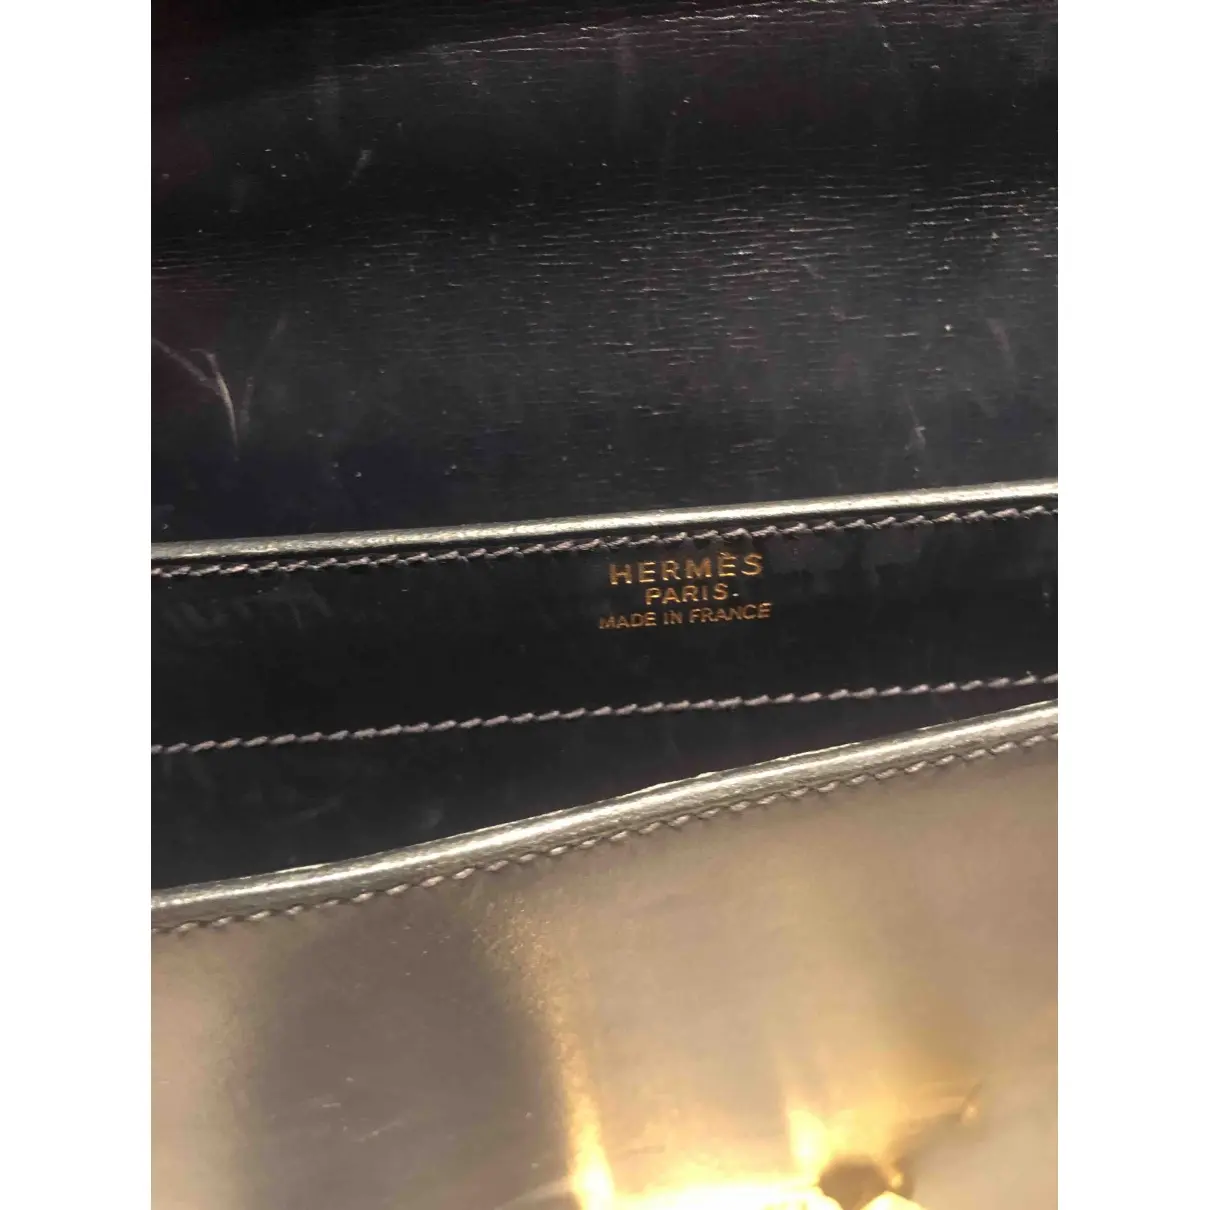 Buy Hermès Sac à dépèches leather satchel online - Vintage